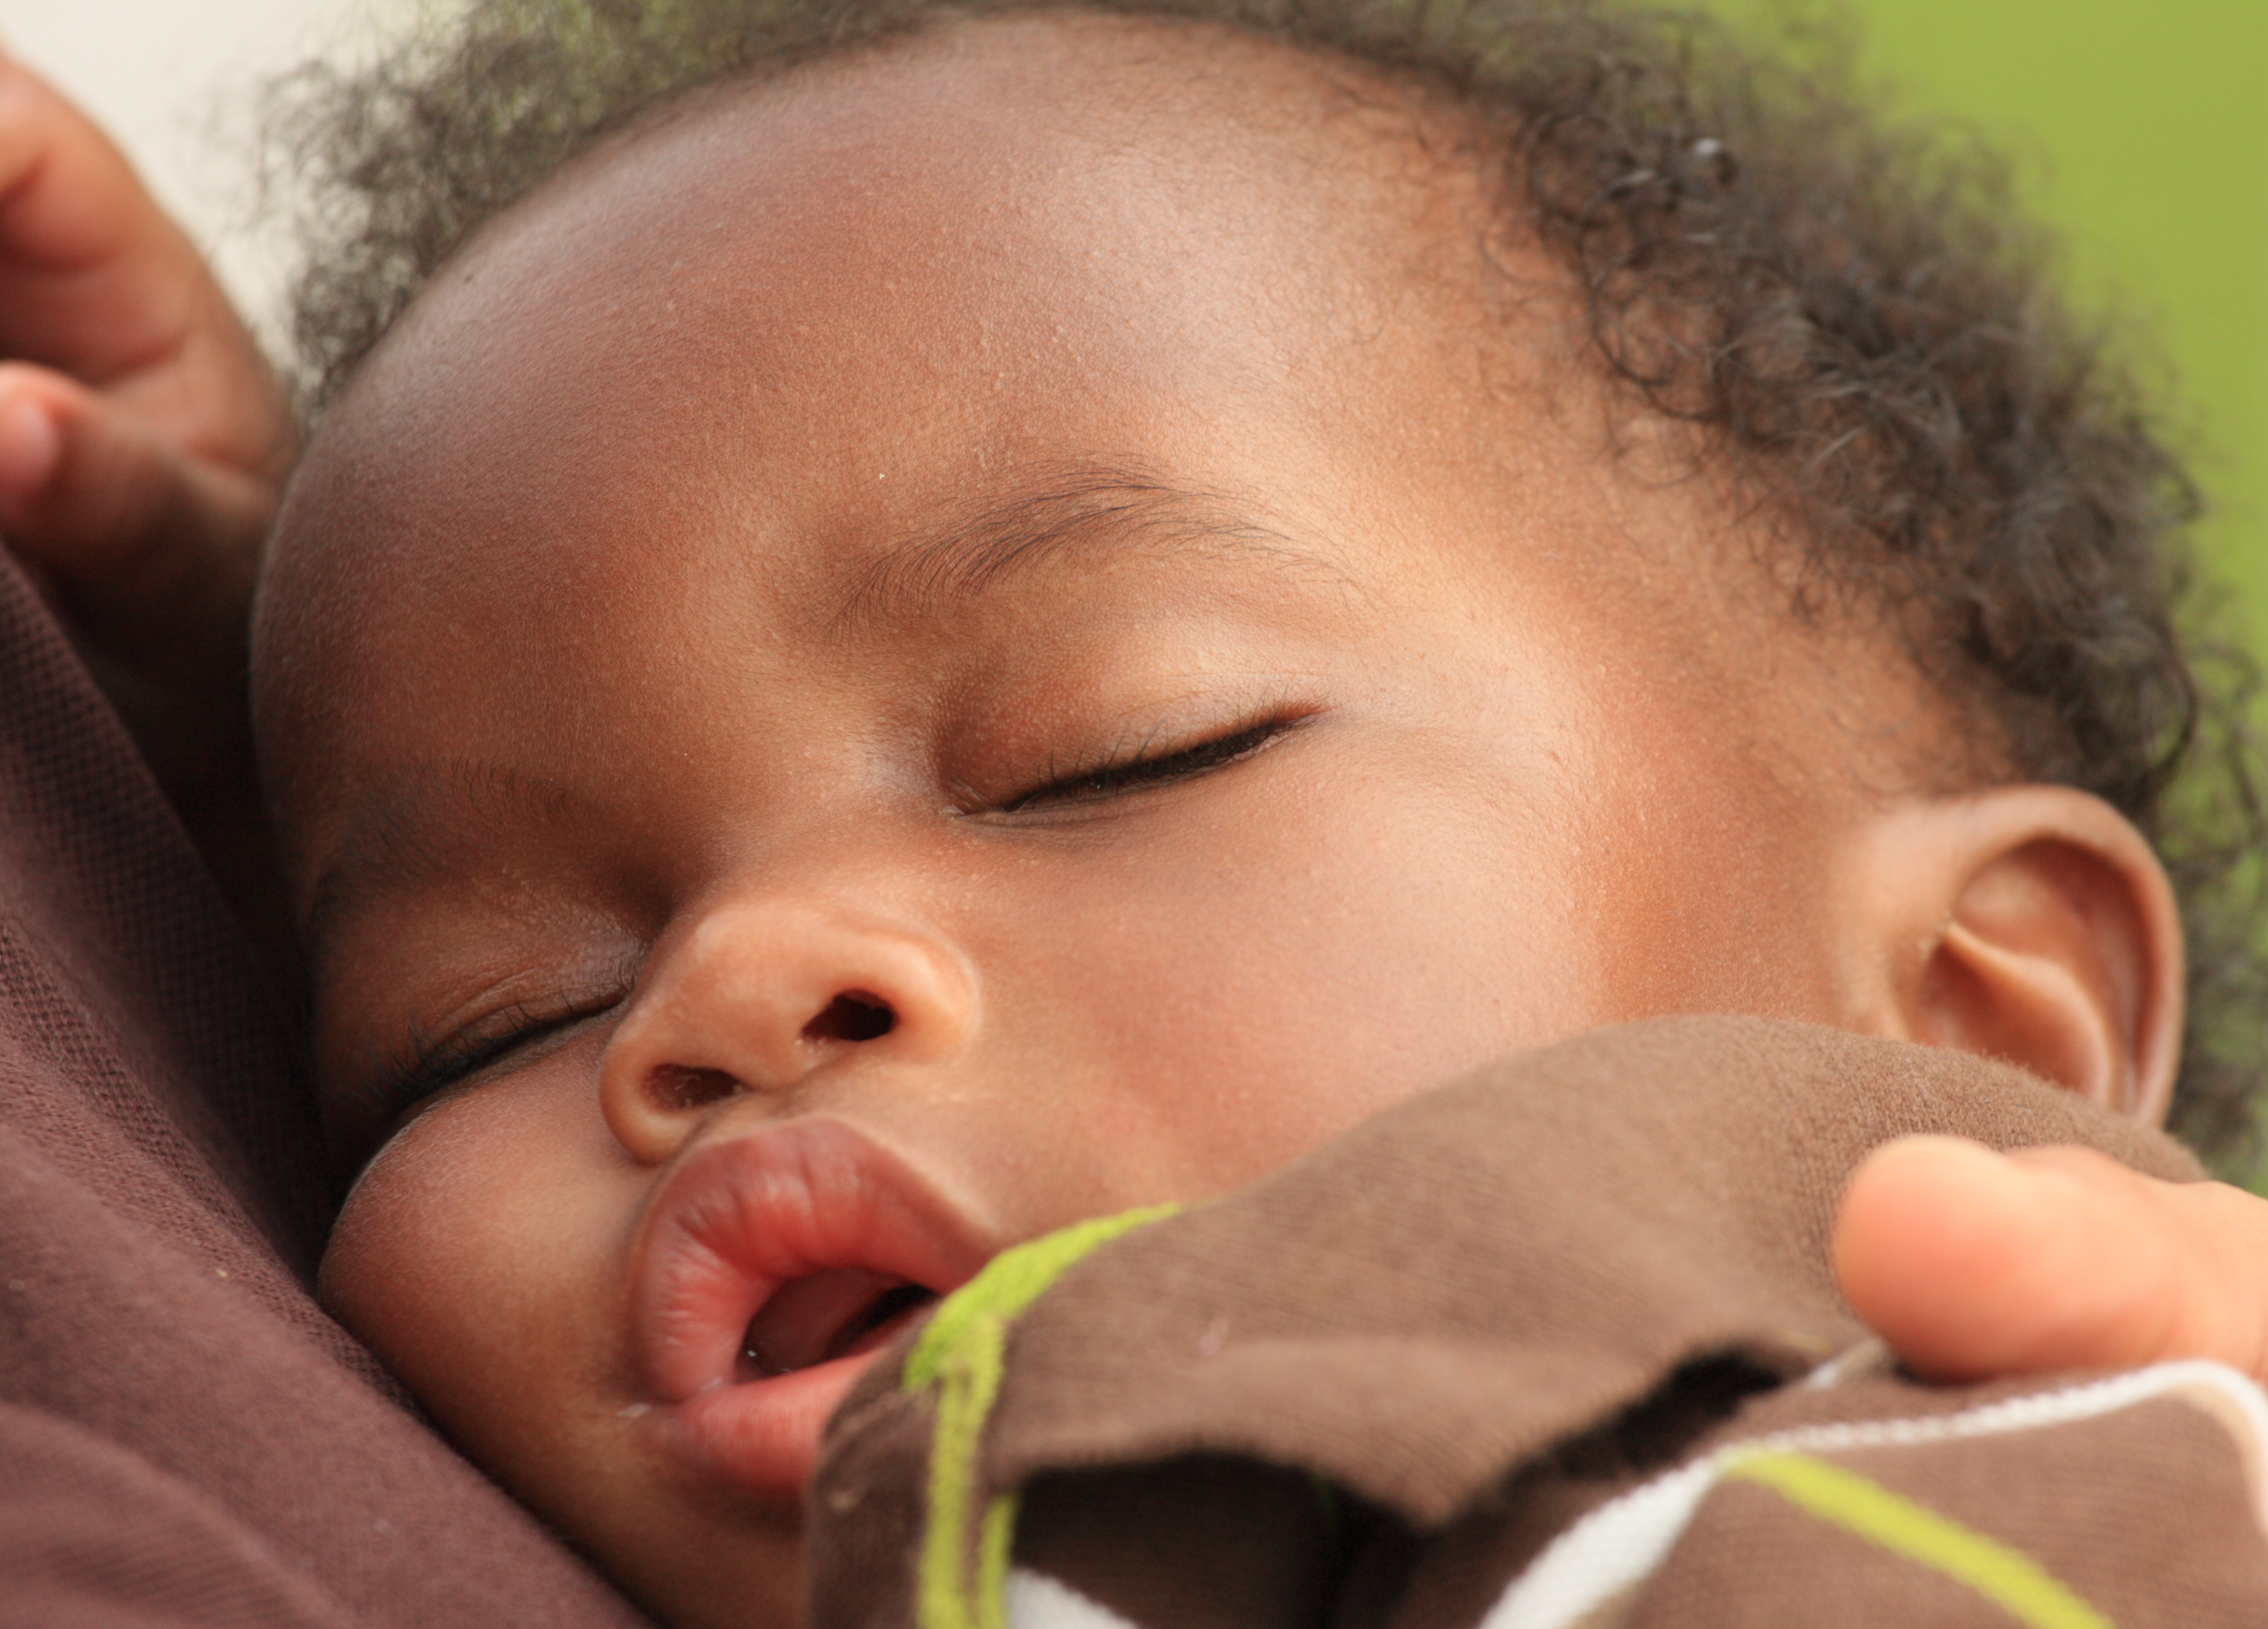 Infants and Sleep